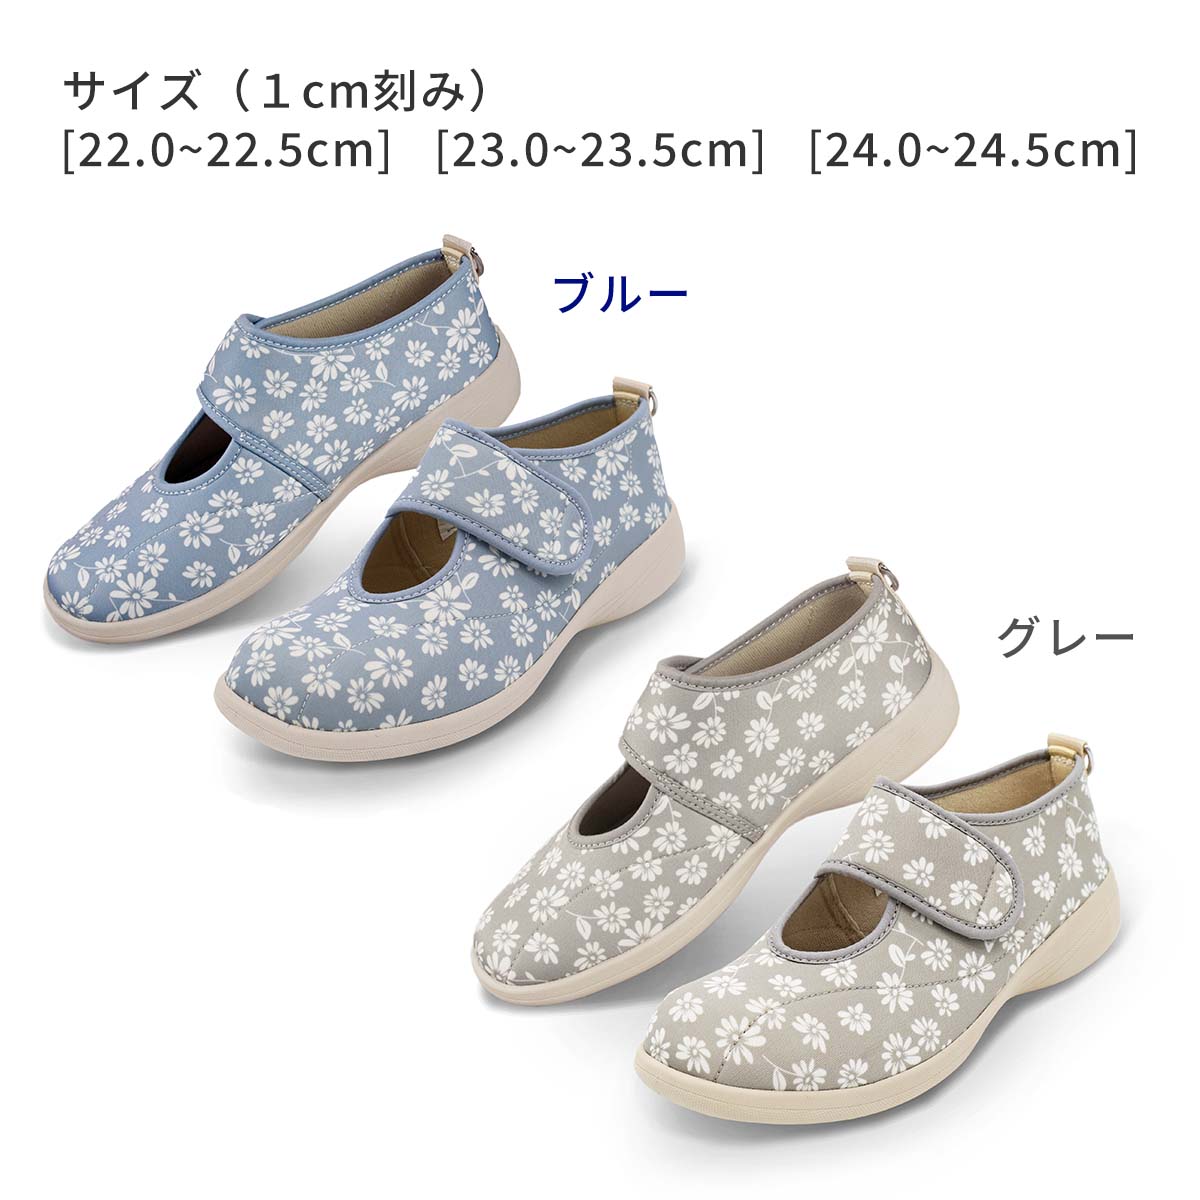 shoes_sutakora08